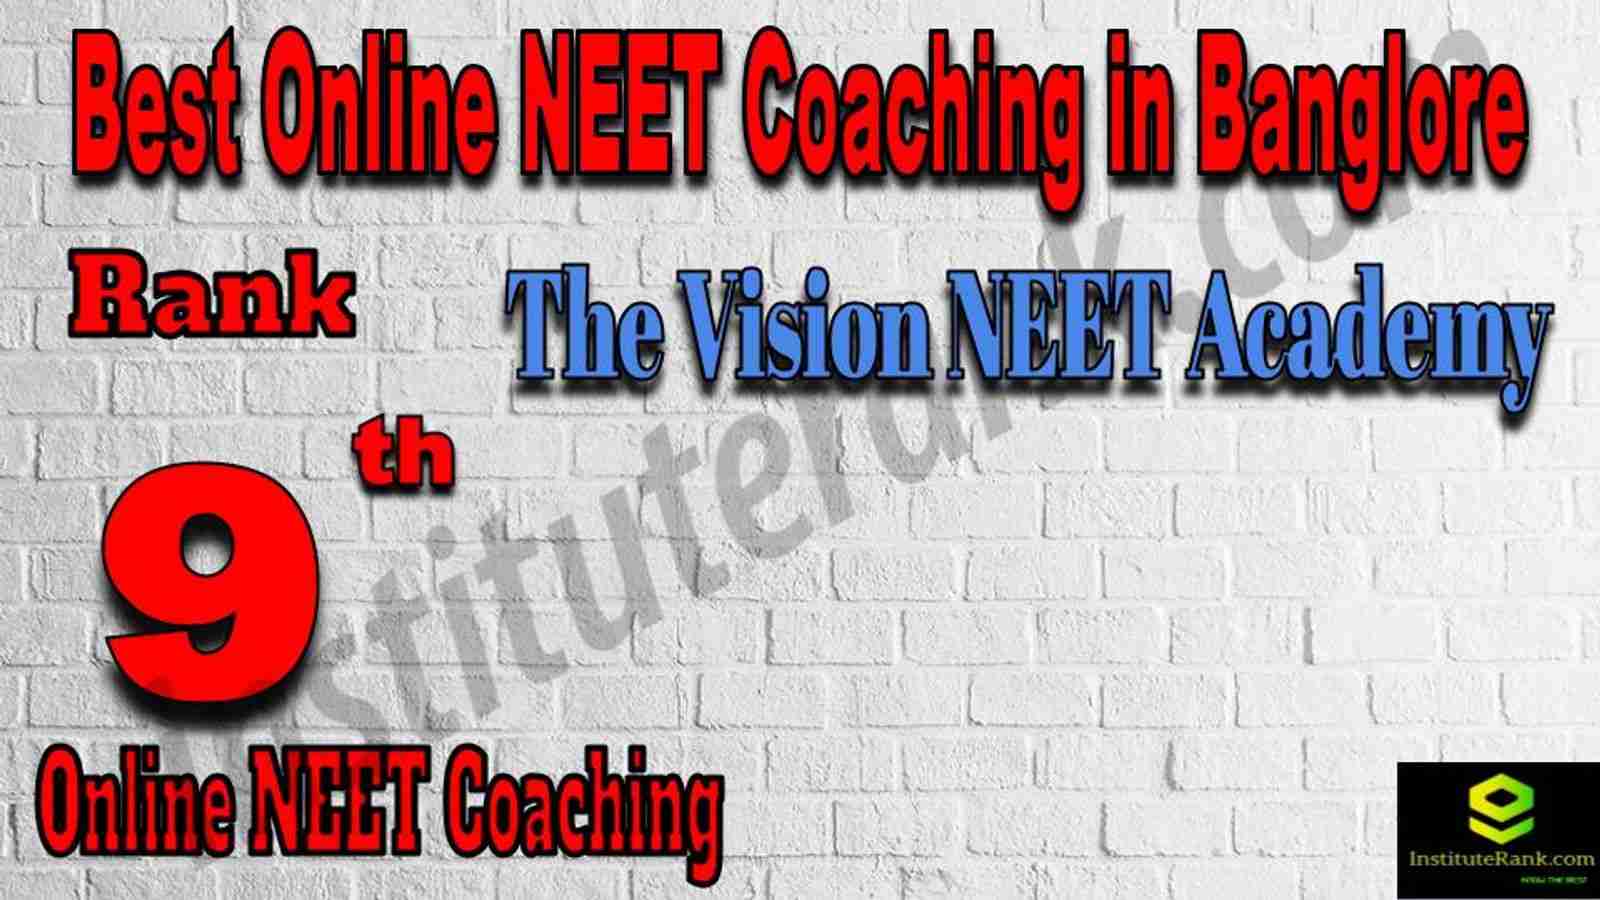 Rank 9 Best Online NEET Coaching in Banglore